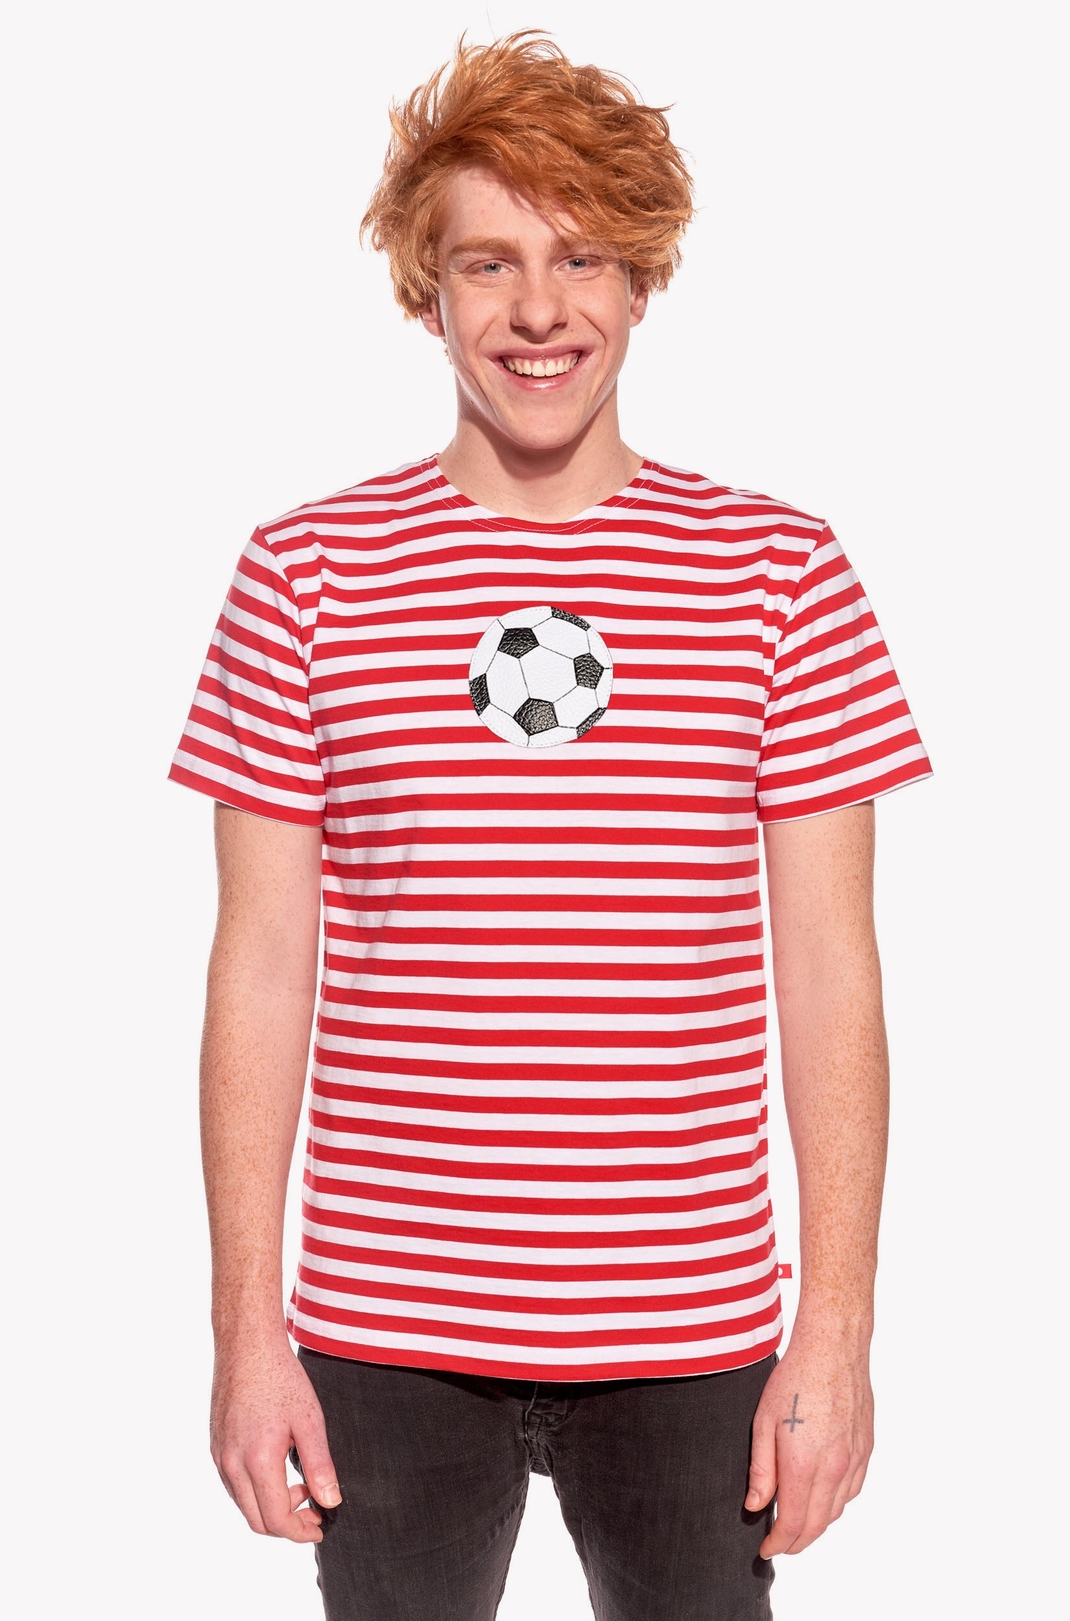 Tričko s futbalkou